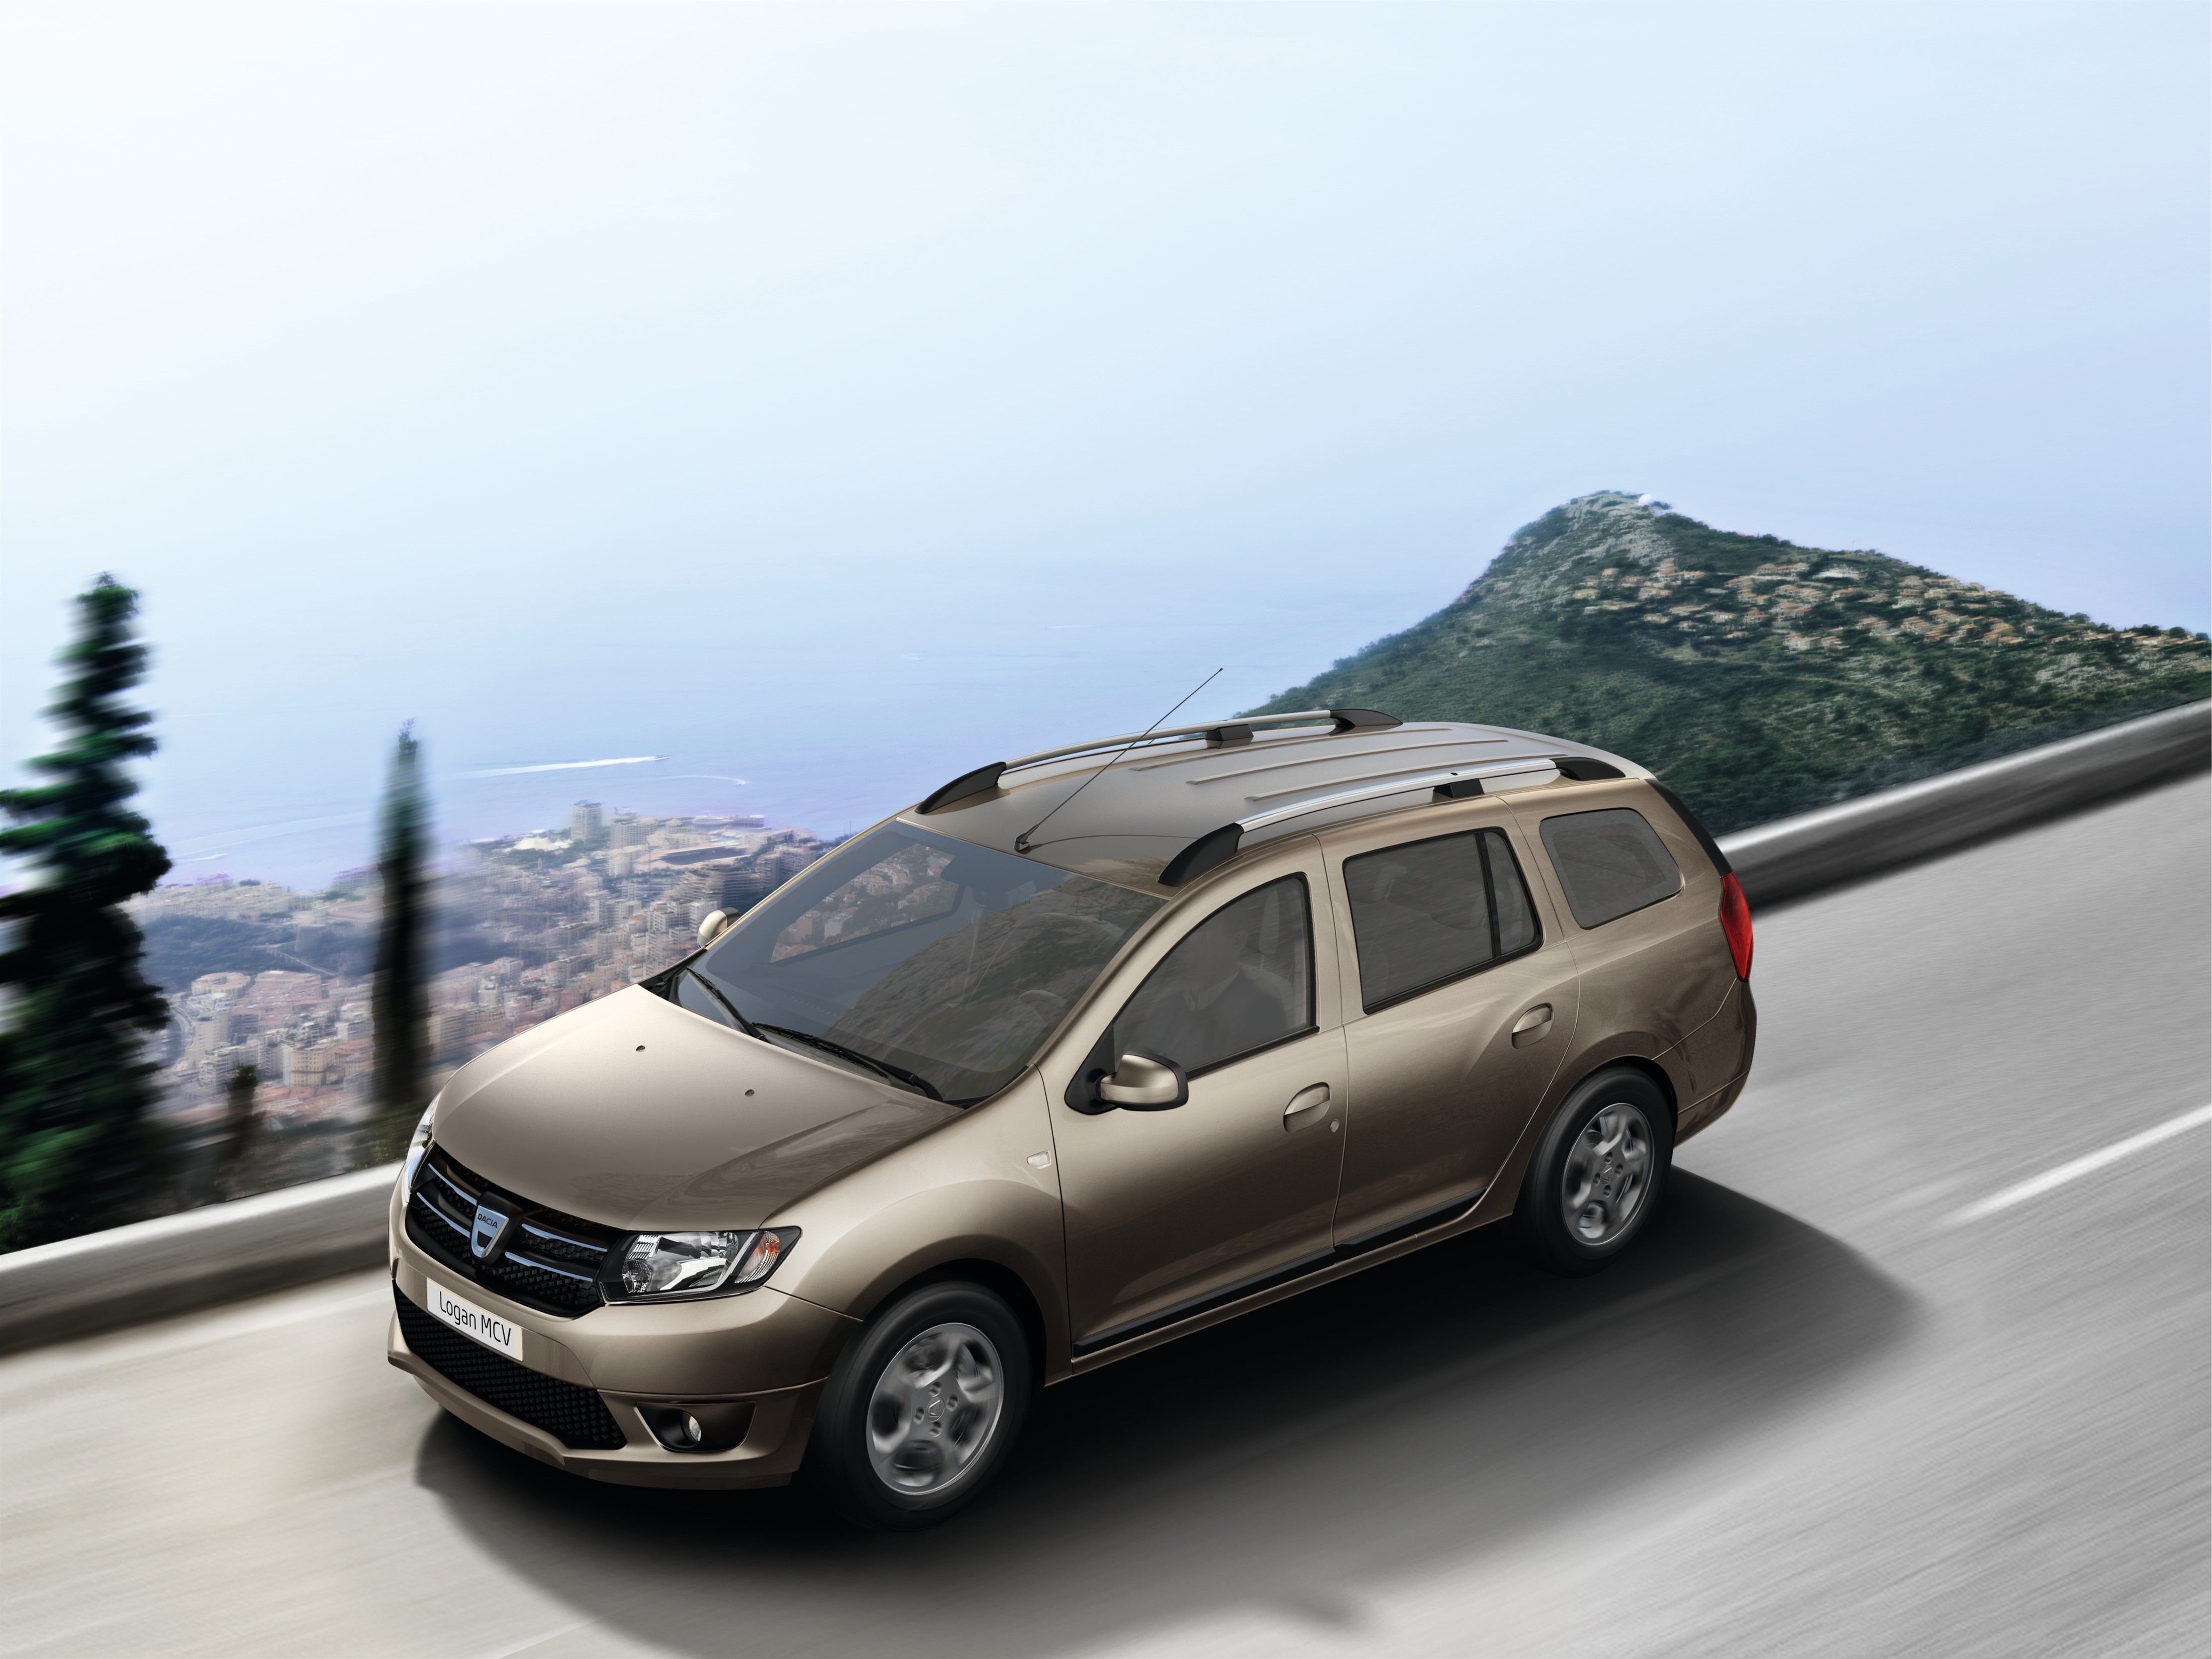 Dacia ujawniła nowe kombi dla ludu! Zobacz na zdjęciach